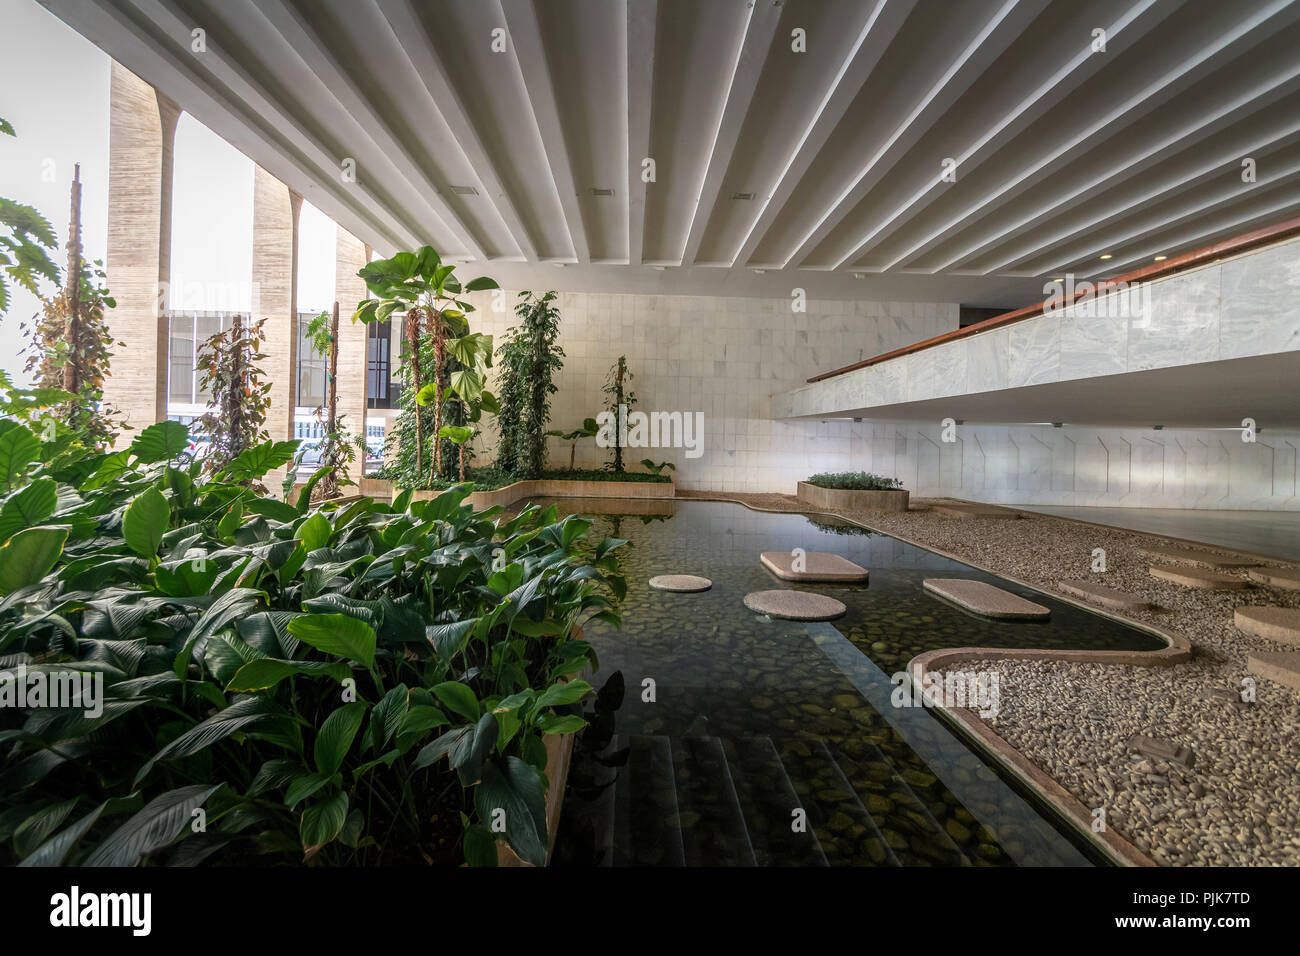 Garden at Entrance Hall of Itamaraty Palace interior - Brasilia, Distrito Federal, Brazil Stock Photo